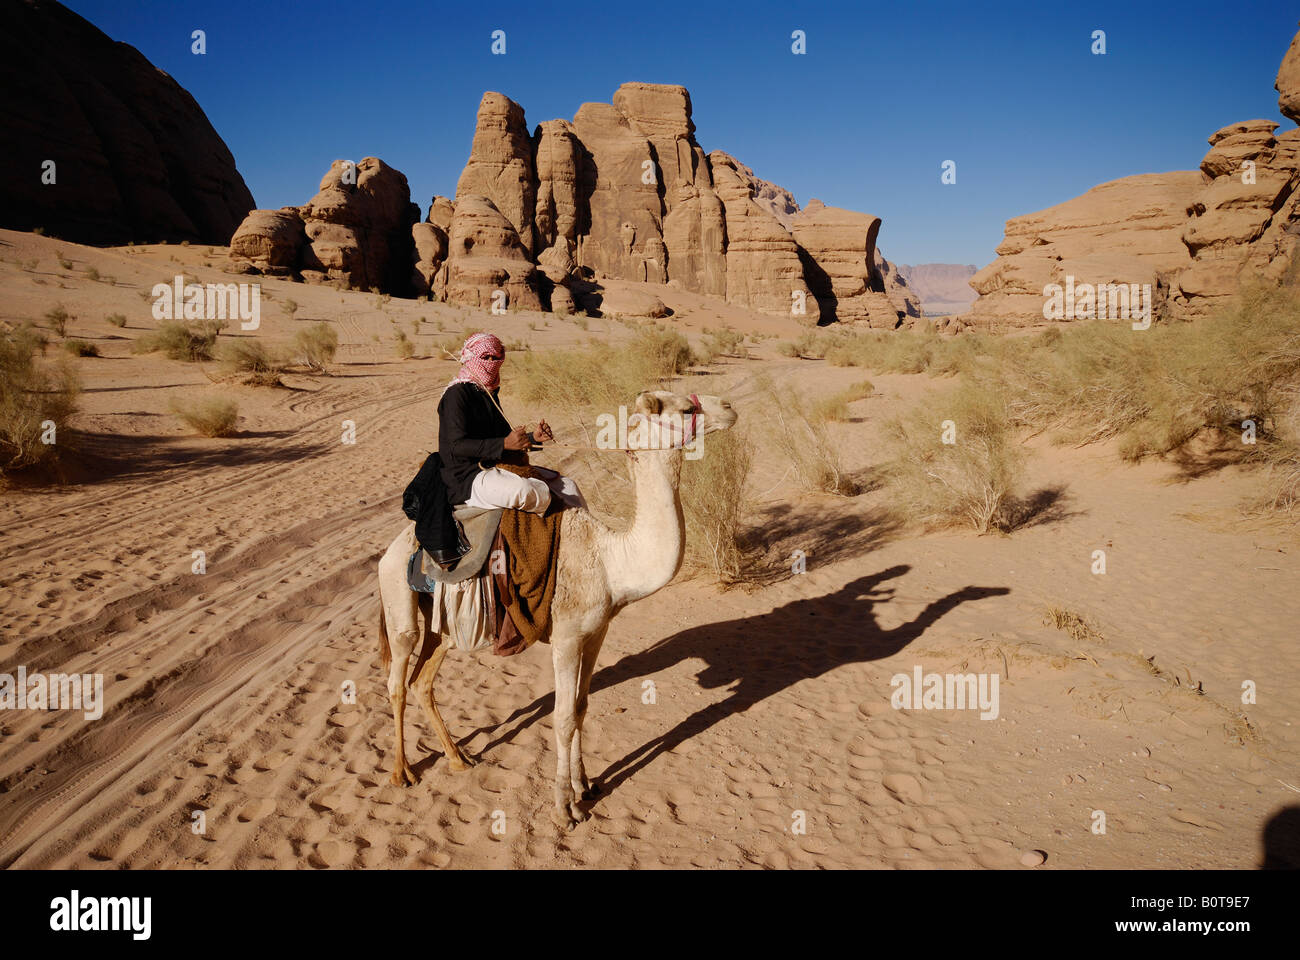 Sur bédouin chameau dans désert du Wadi Rum Jordanie Saoudite Banque D'Images